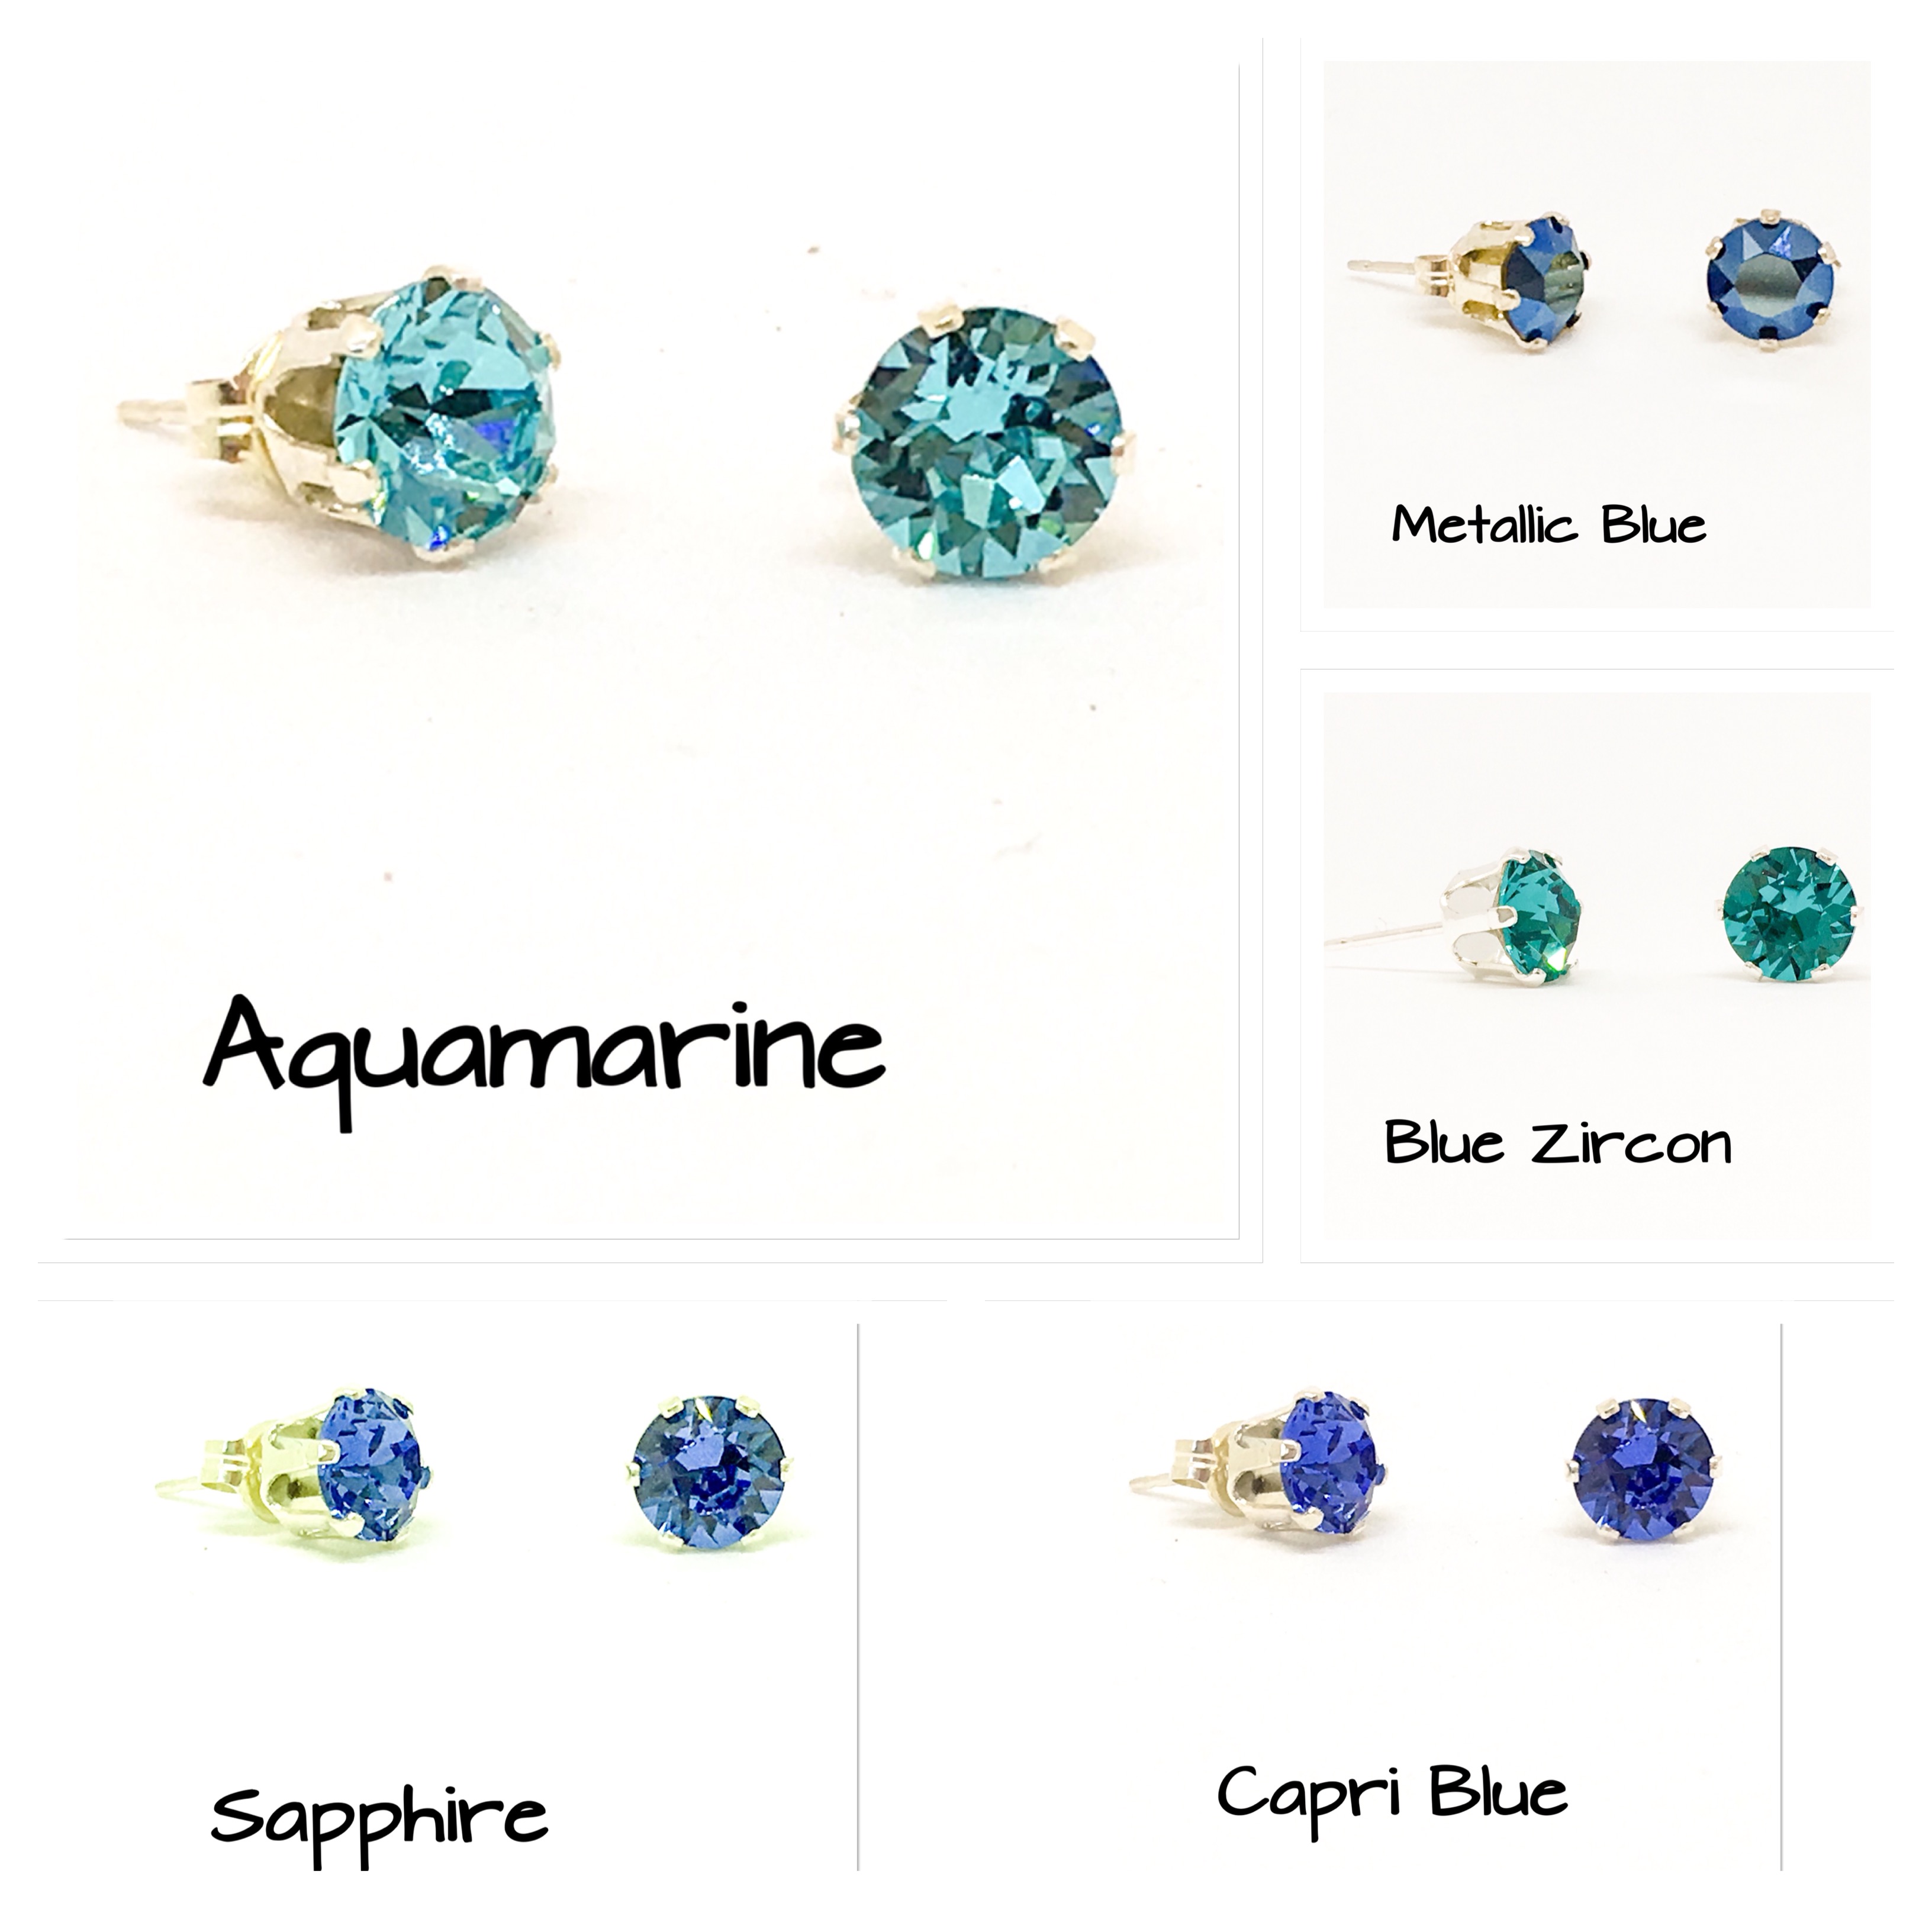 Swarovski stud earrings, 6mm stones, sterling silver stud earrings - Blues